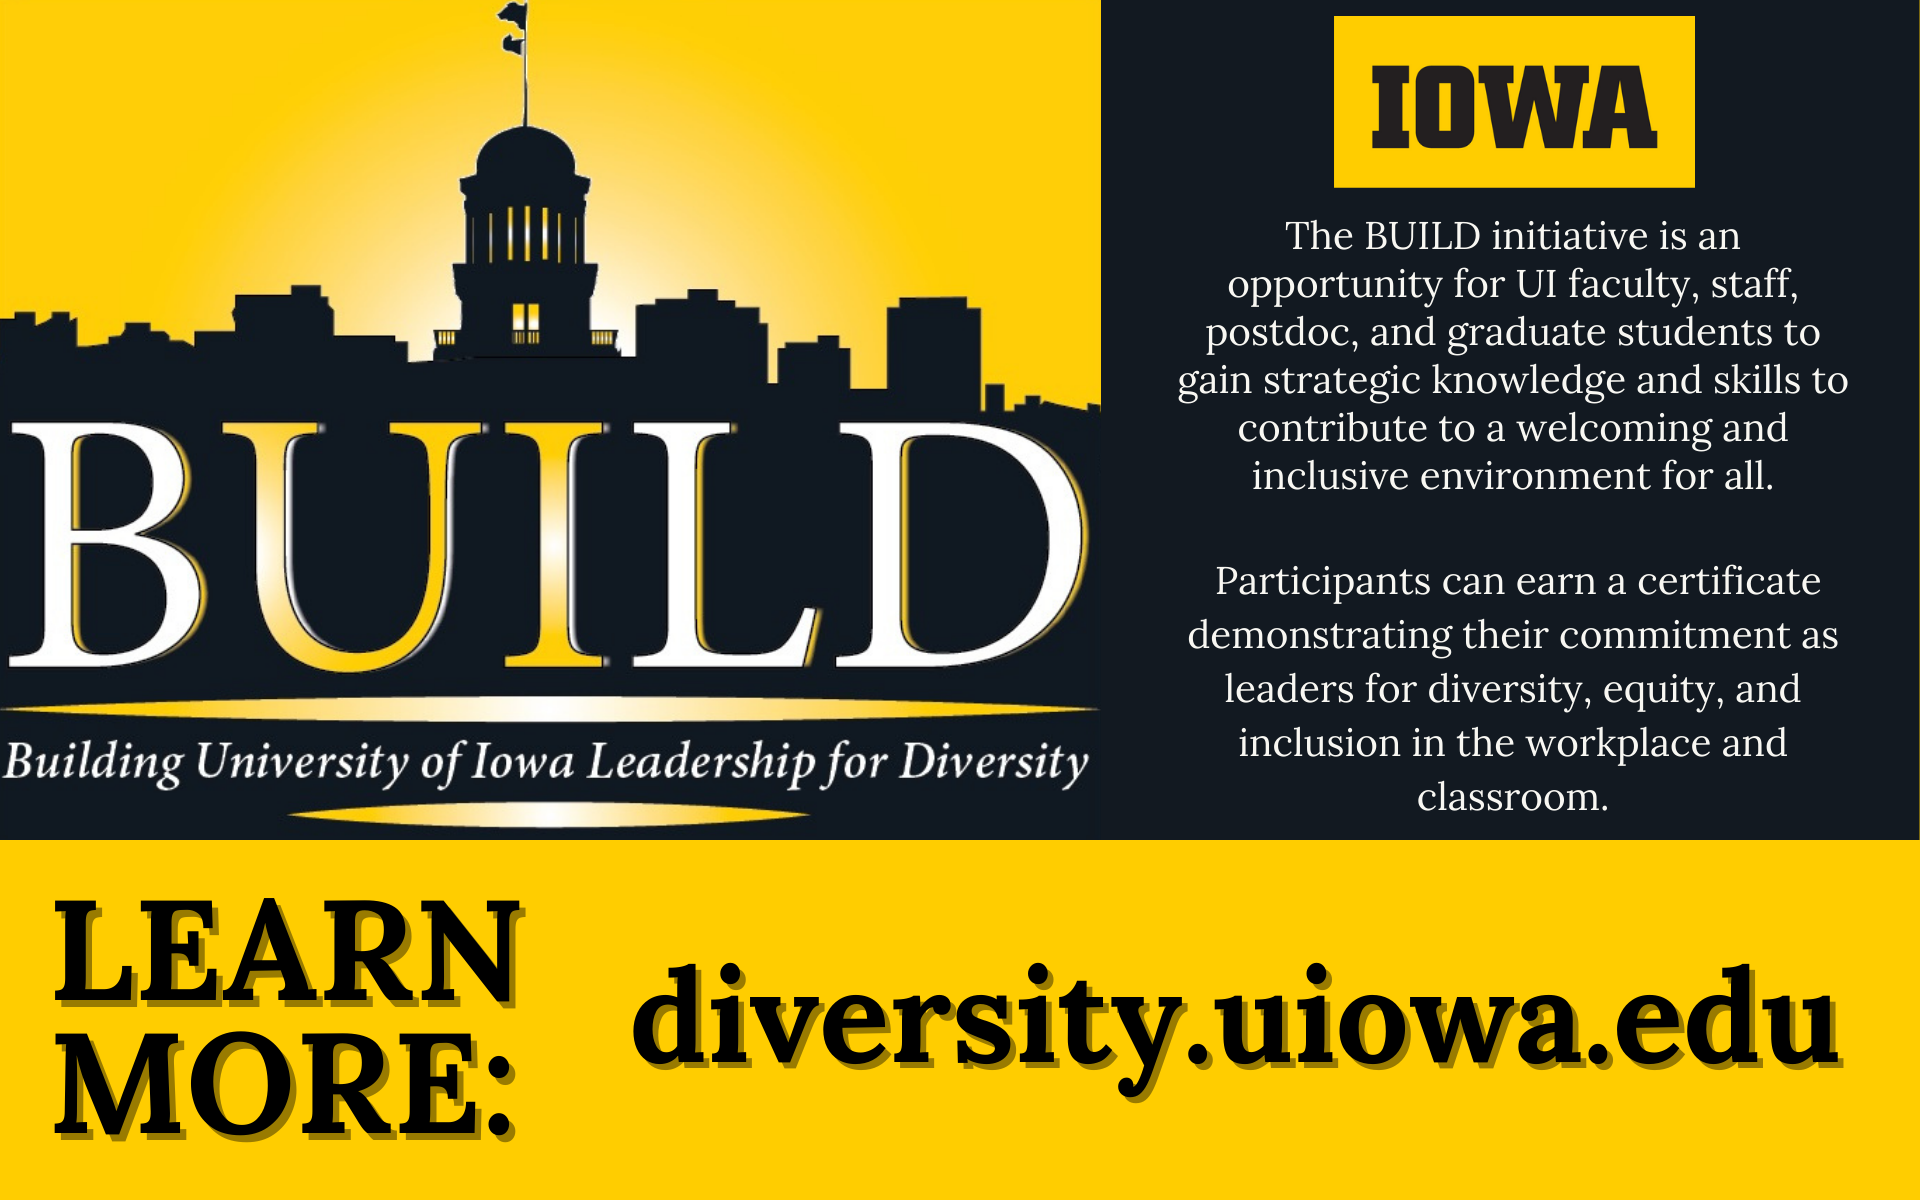 University of Iowa BUILD program diversity.uiowa.edu